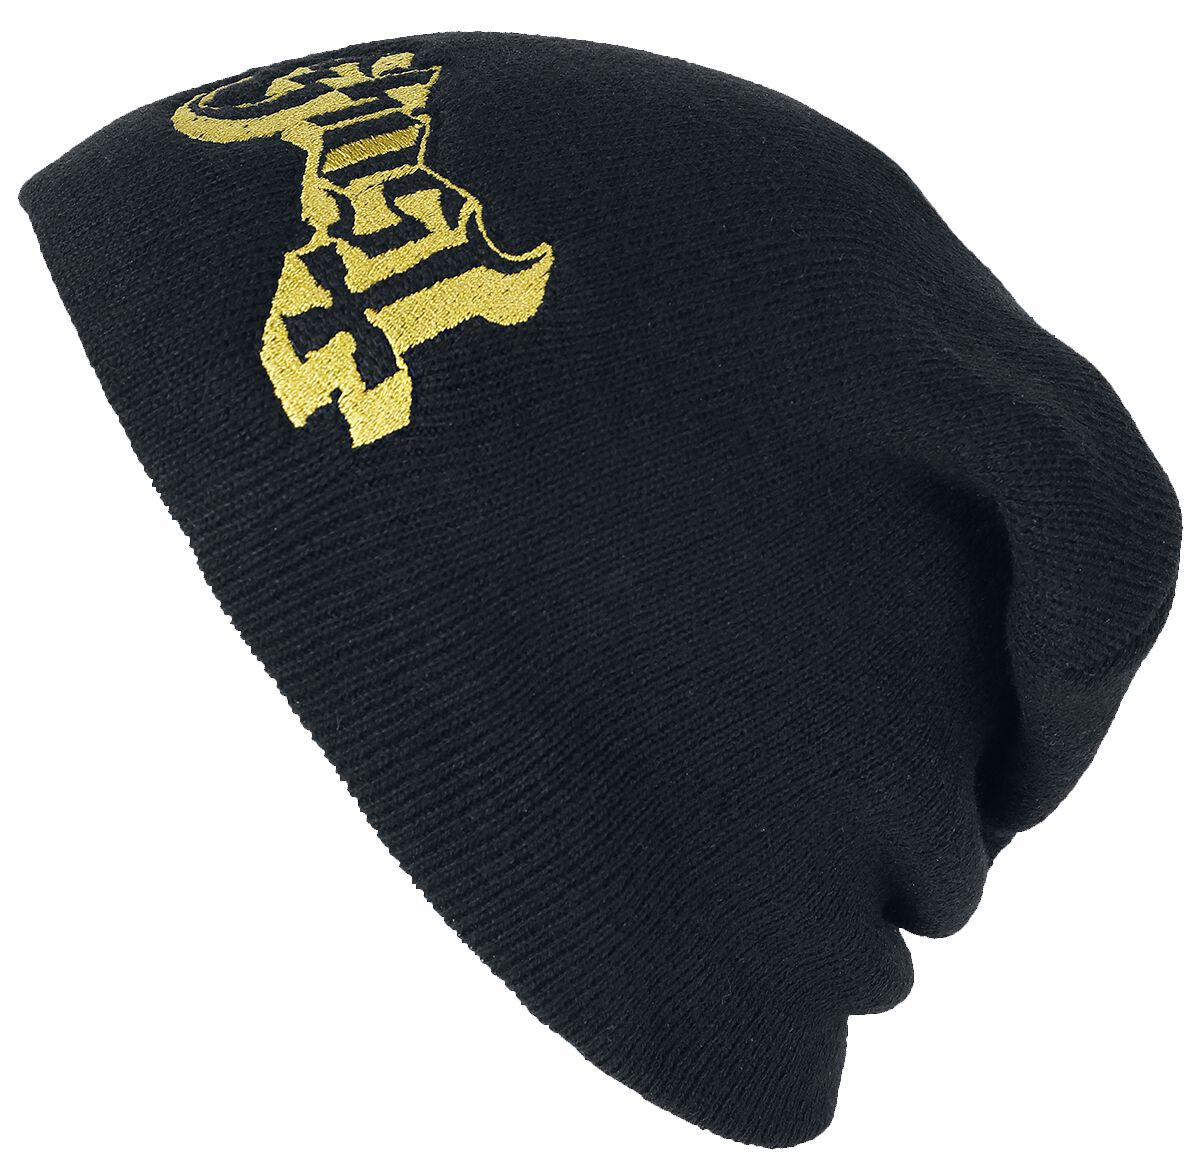 Ghost Mütze - Logo - schwarz  - Lizenziertes Merchandise!